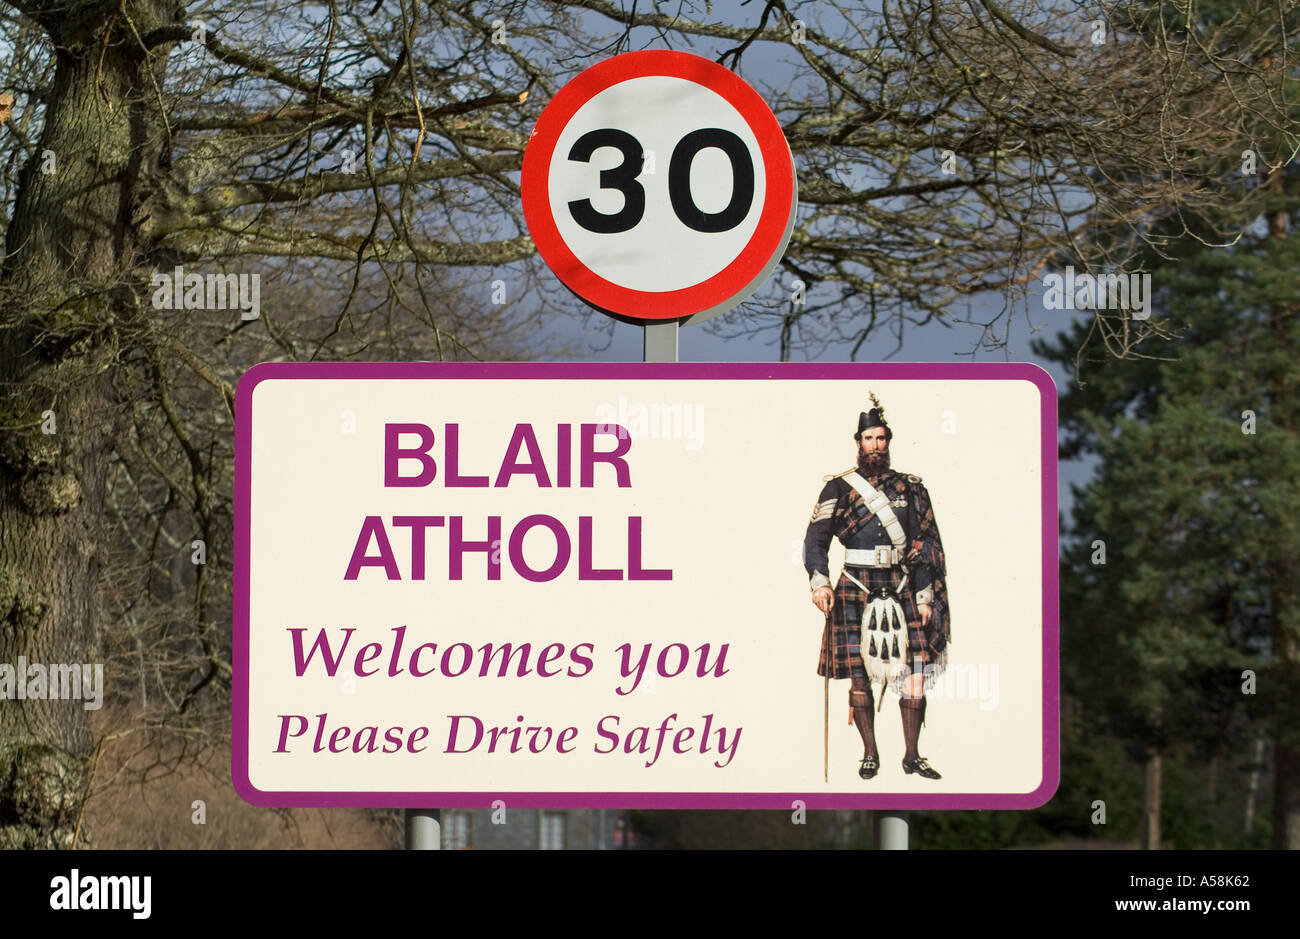 dh BLAIR ATHOLL PERTHSHIRE Bienvenue, veuillez conduire en toute sécurité, panneau 30 limite de vitesse mph highlands roadsign uk village road Banque D'Images